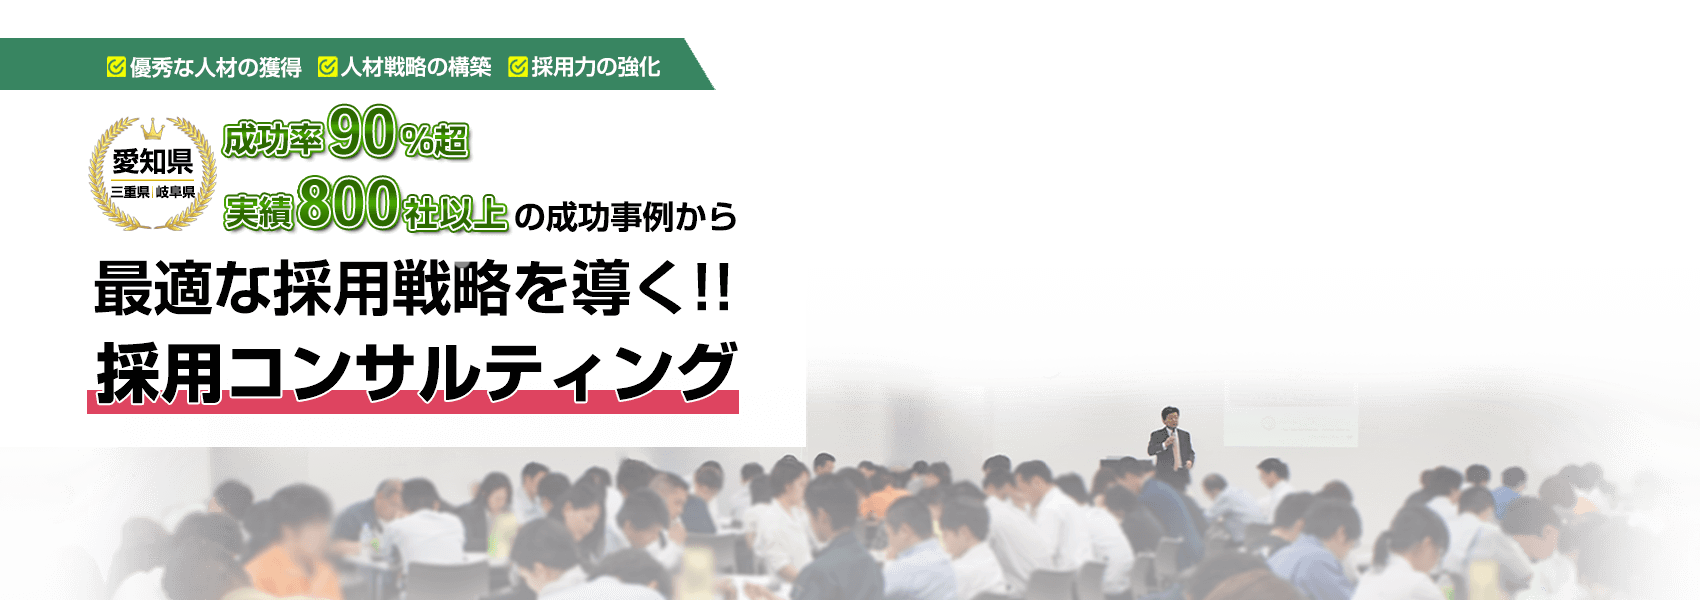 採⽤コンサルティングなら愛知県の株式会社リンクコンサルティンググループ